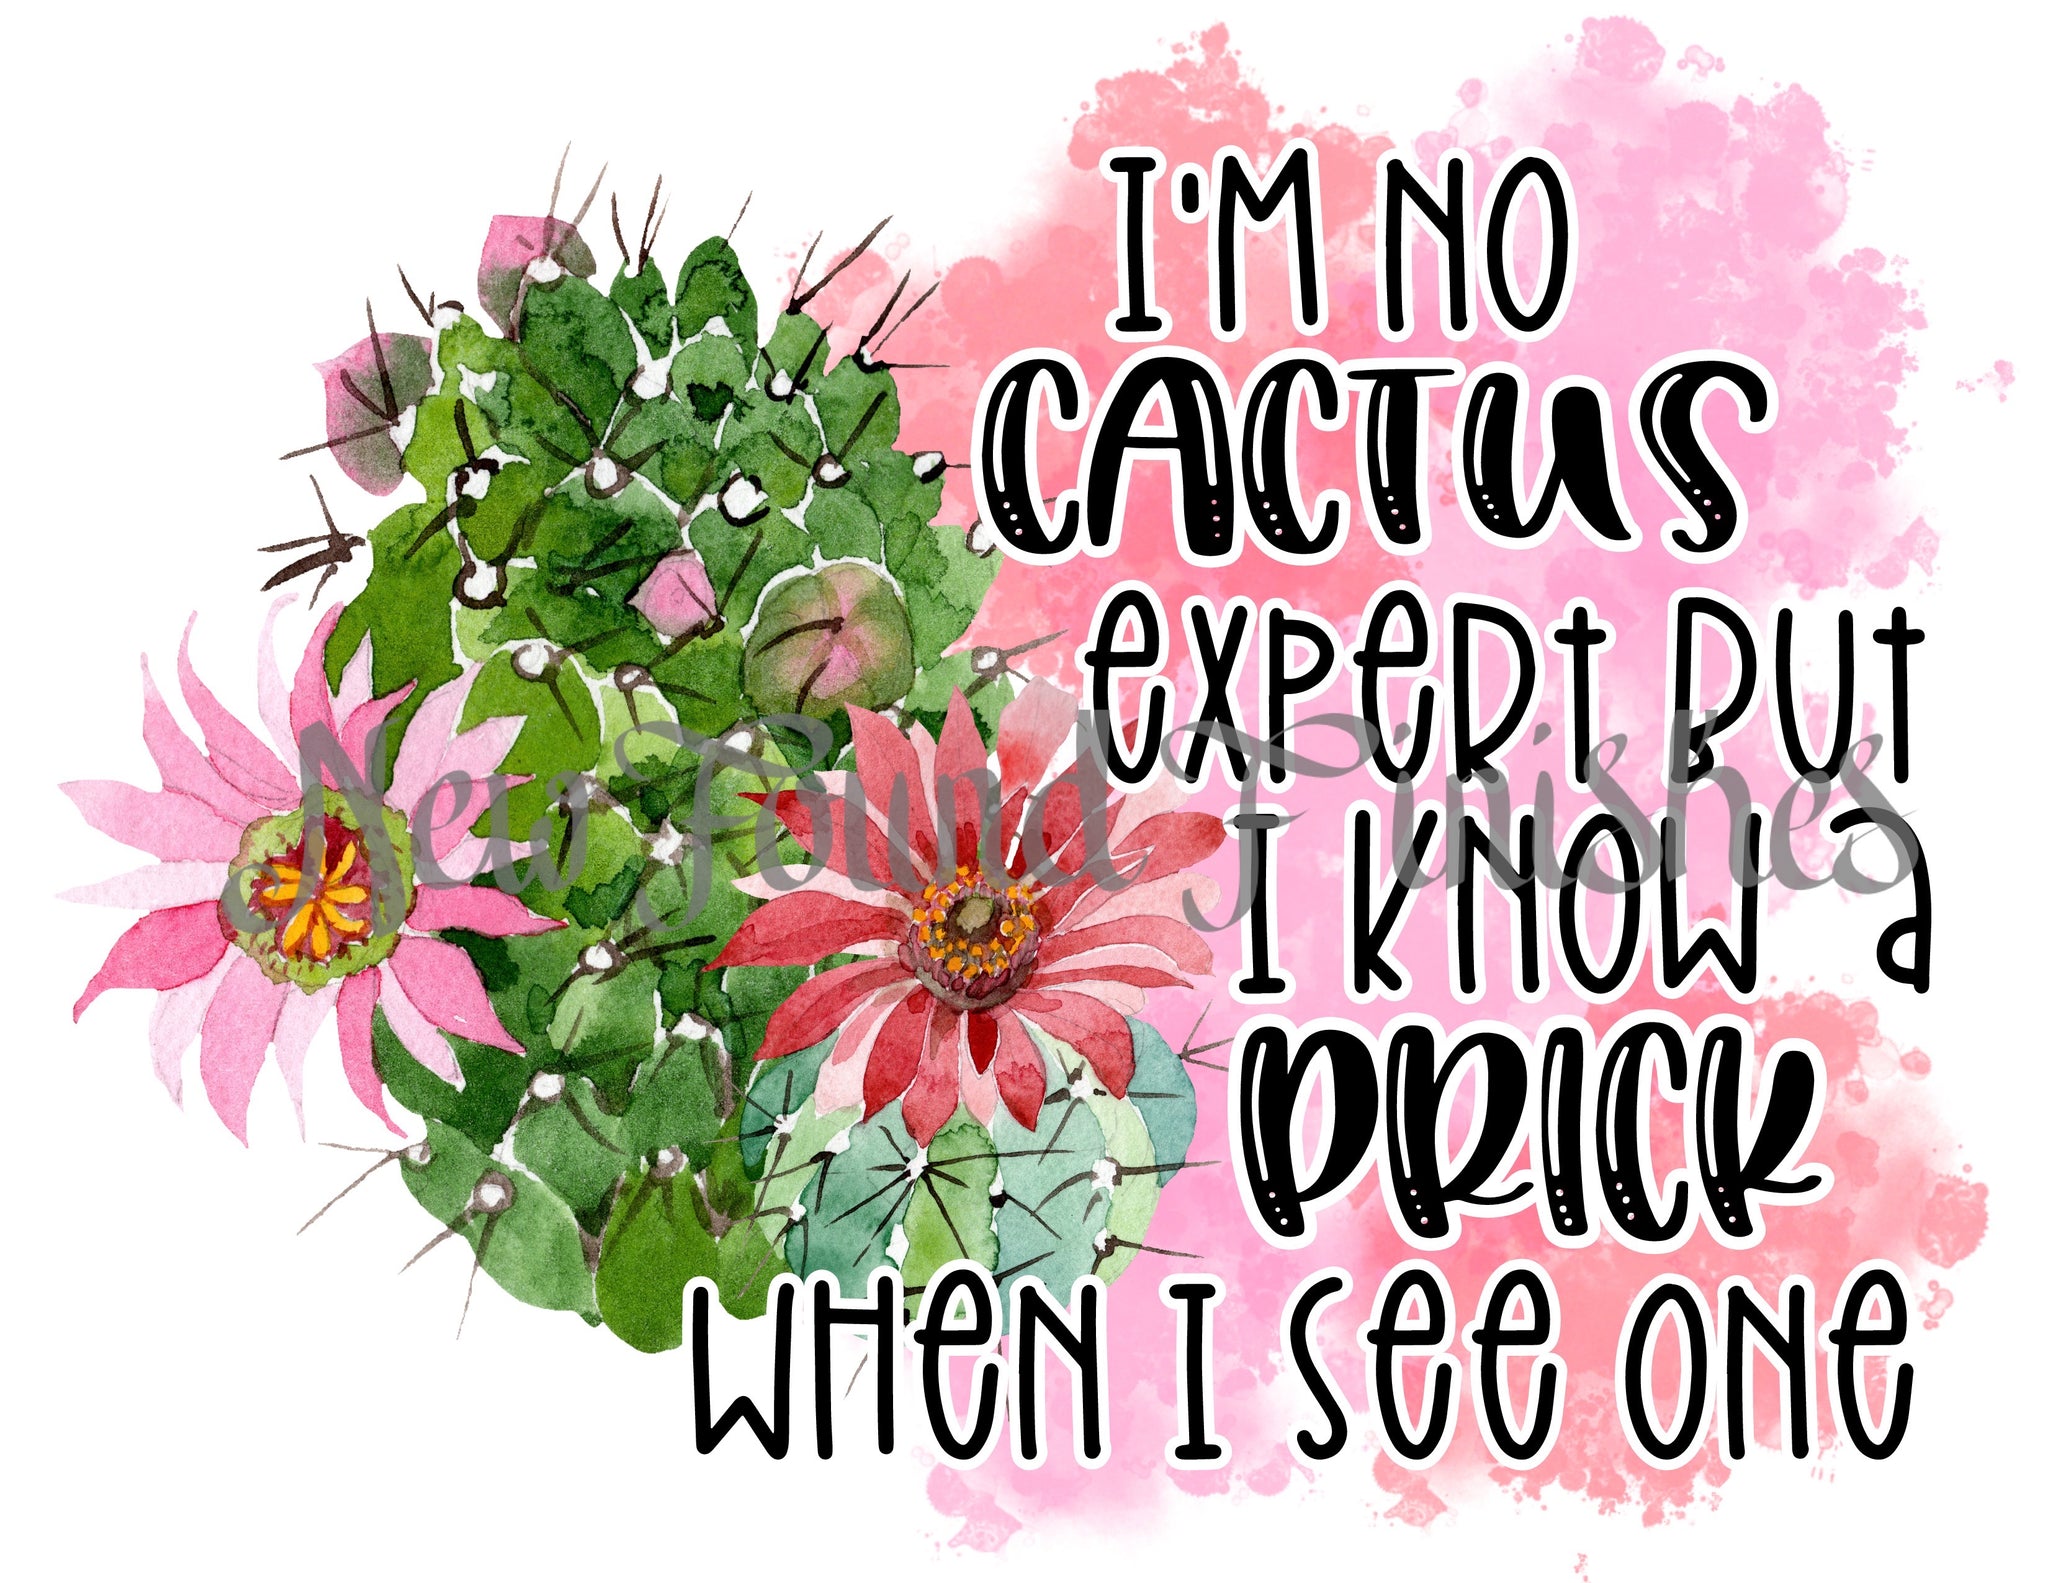 Cactus expert